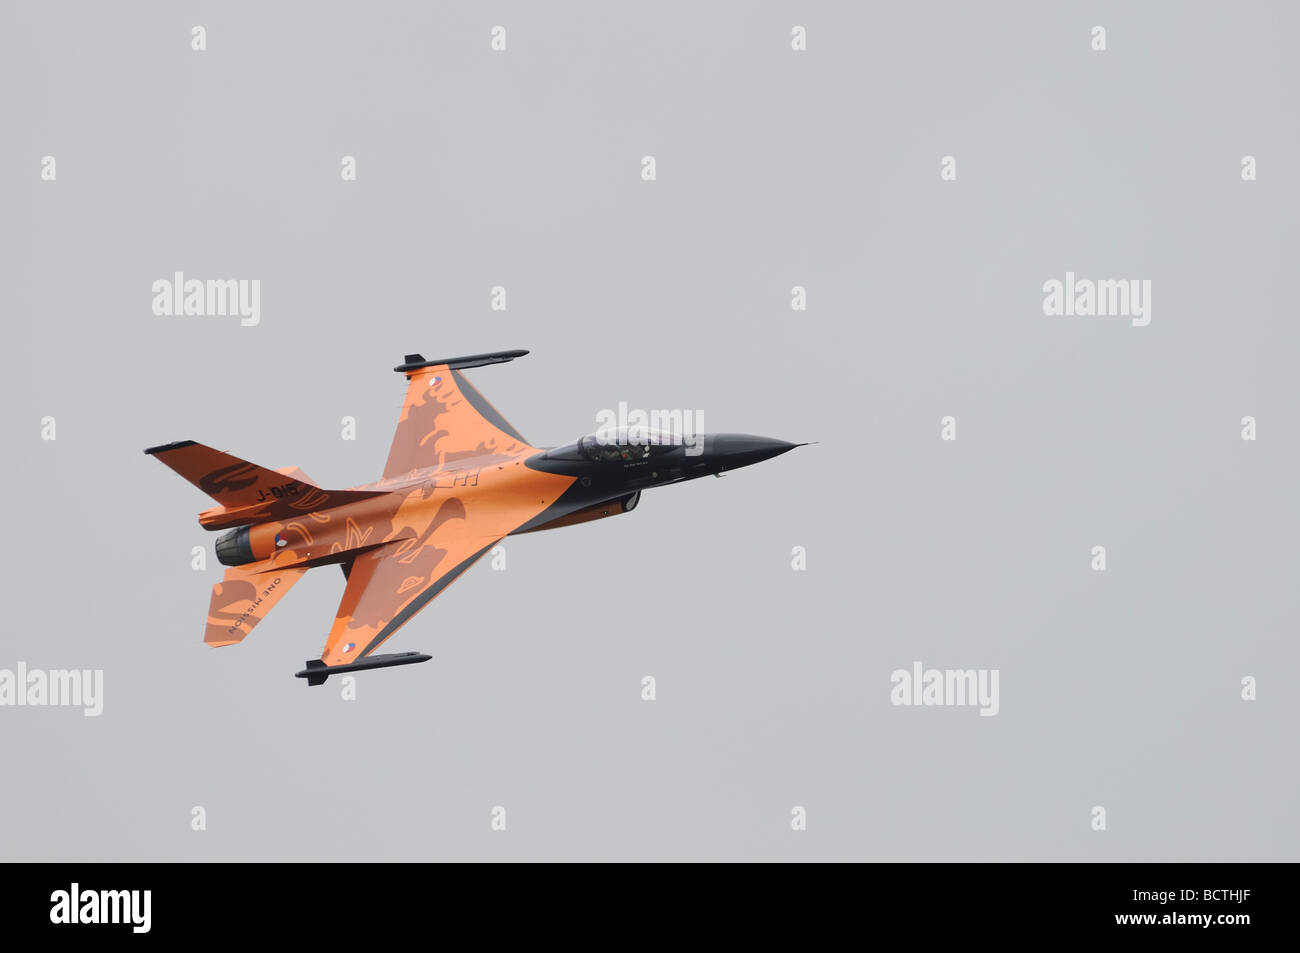 Force aérienne néerlandaise Koninklijke Luchtmacht F-16 Fighter Jet dans "une mission" Schéma de peinture orange. Banque D'Images